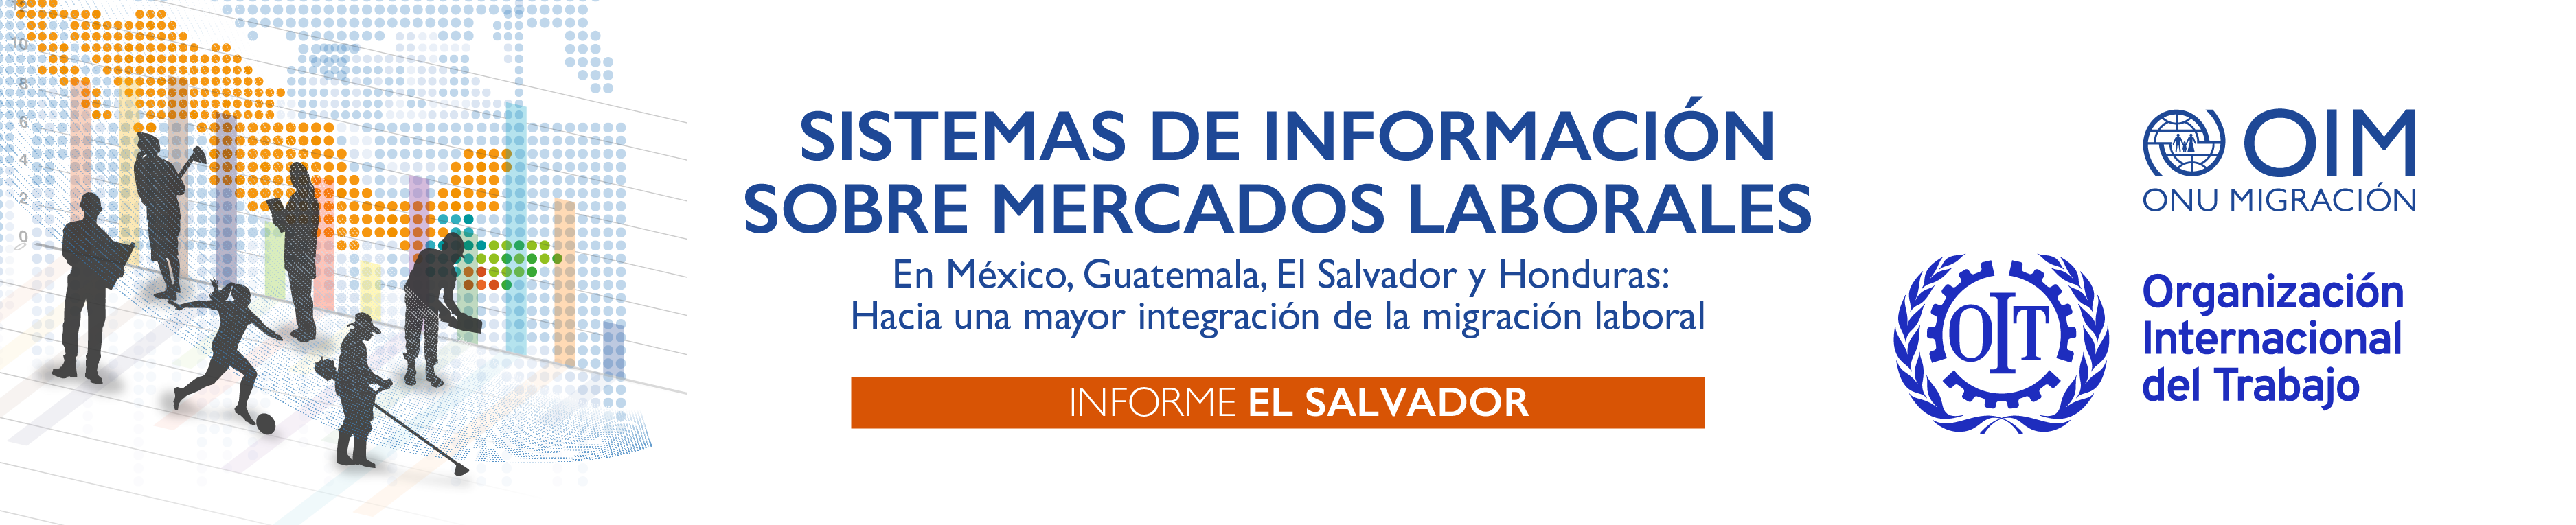 Sistemas de información sobre mercados laborales: Informe El Salvador